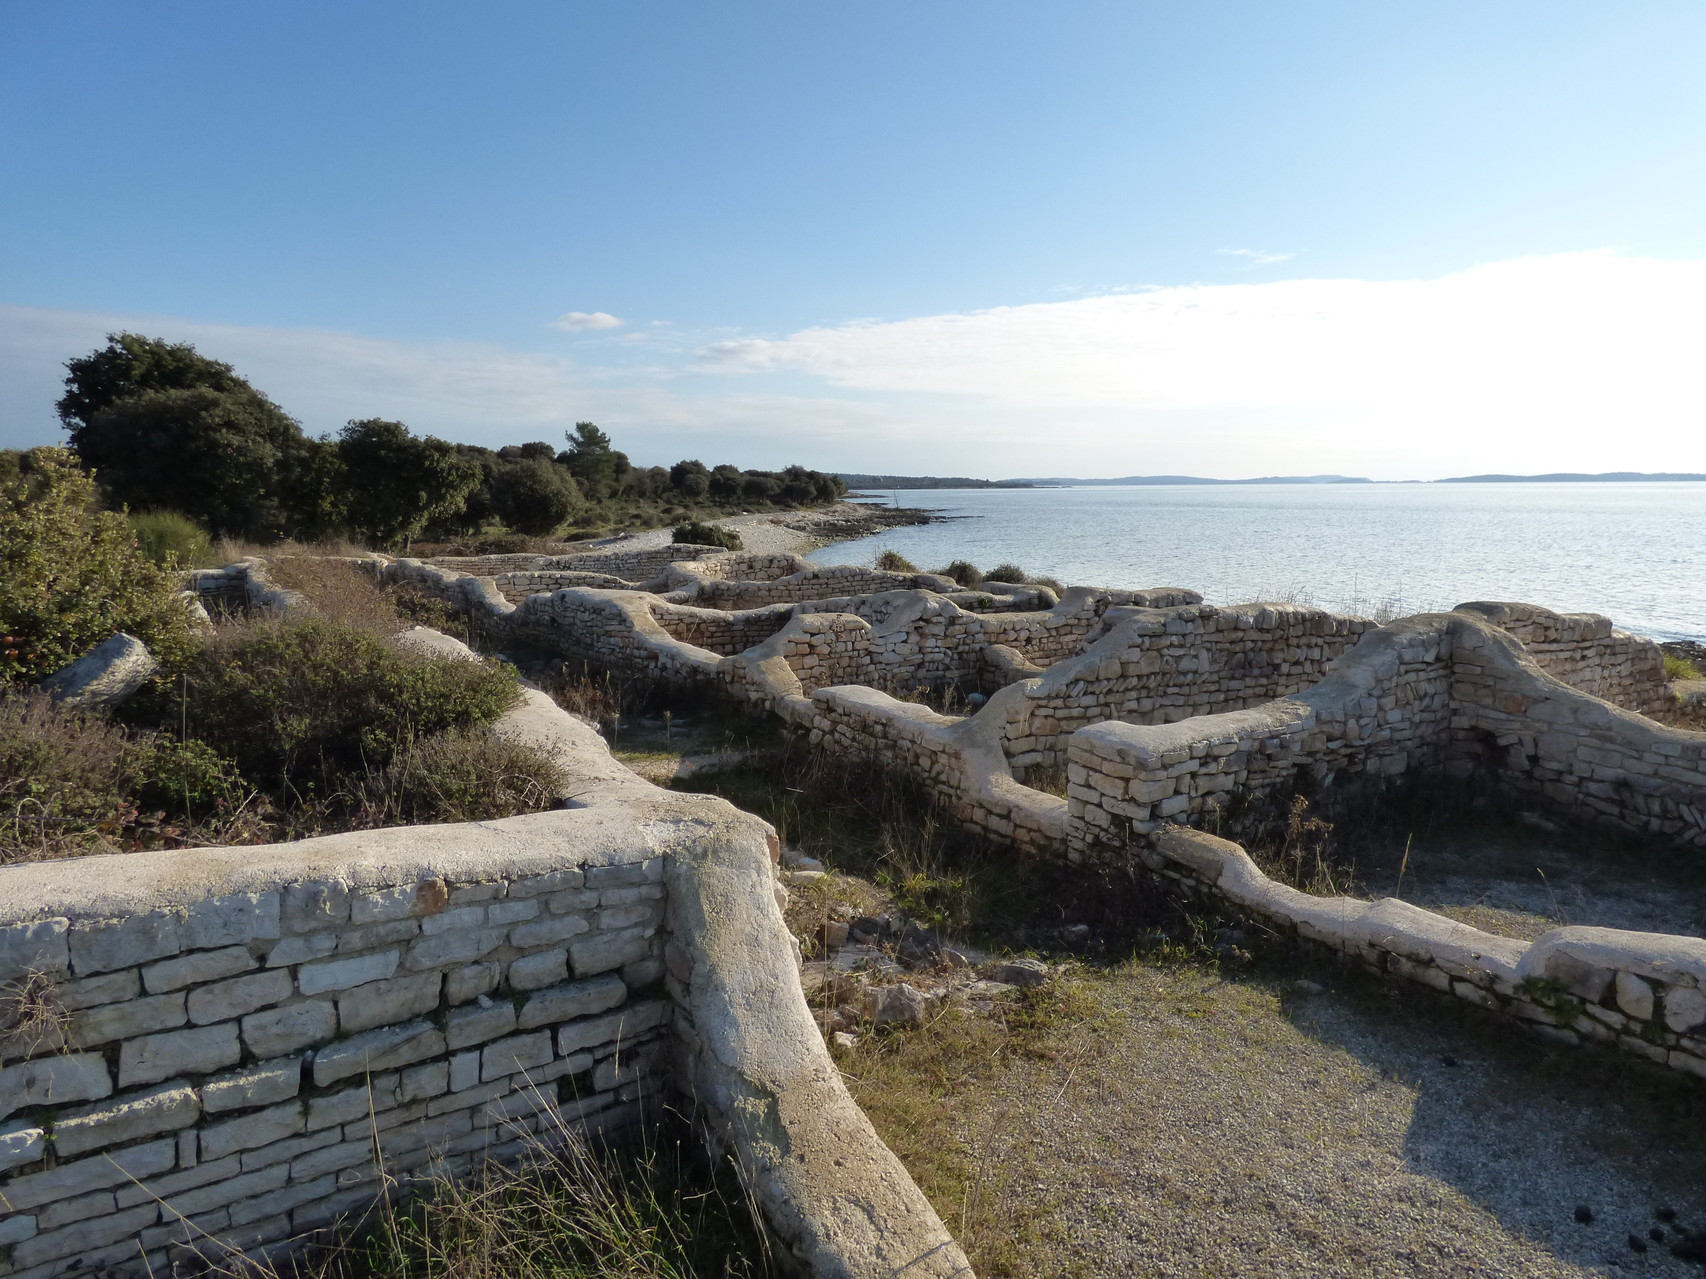 Ehemalige römische Villa am Strand